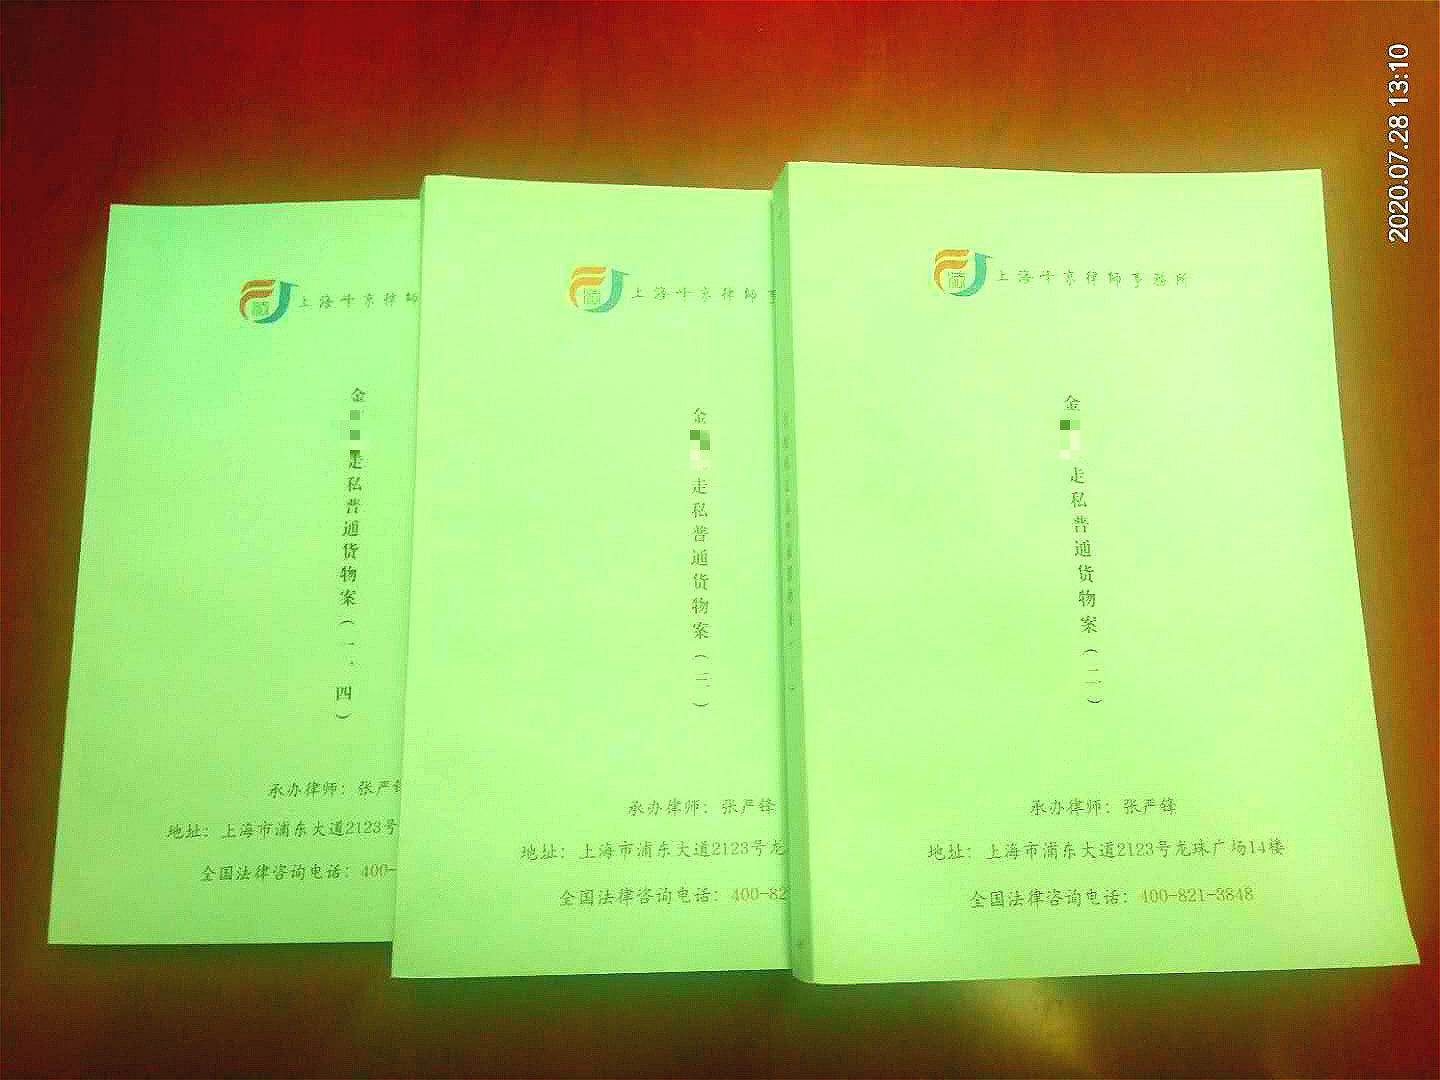 上海峰京律师事务所张严锋律师办理金某某走私普通货物（白糖）案，法院减轻判处四年有期徒刑